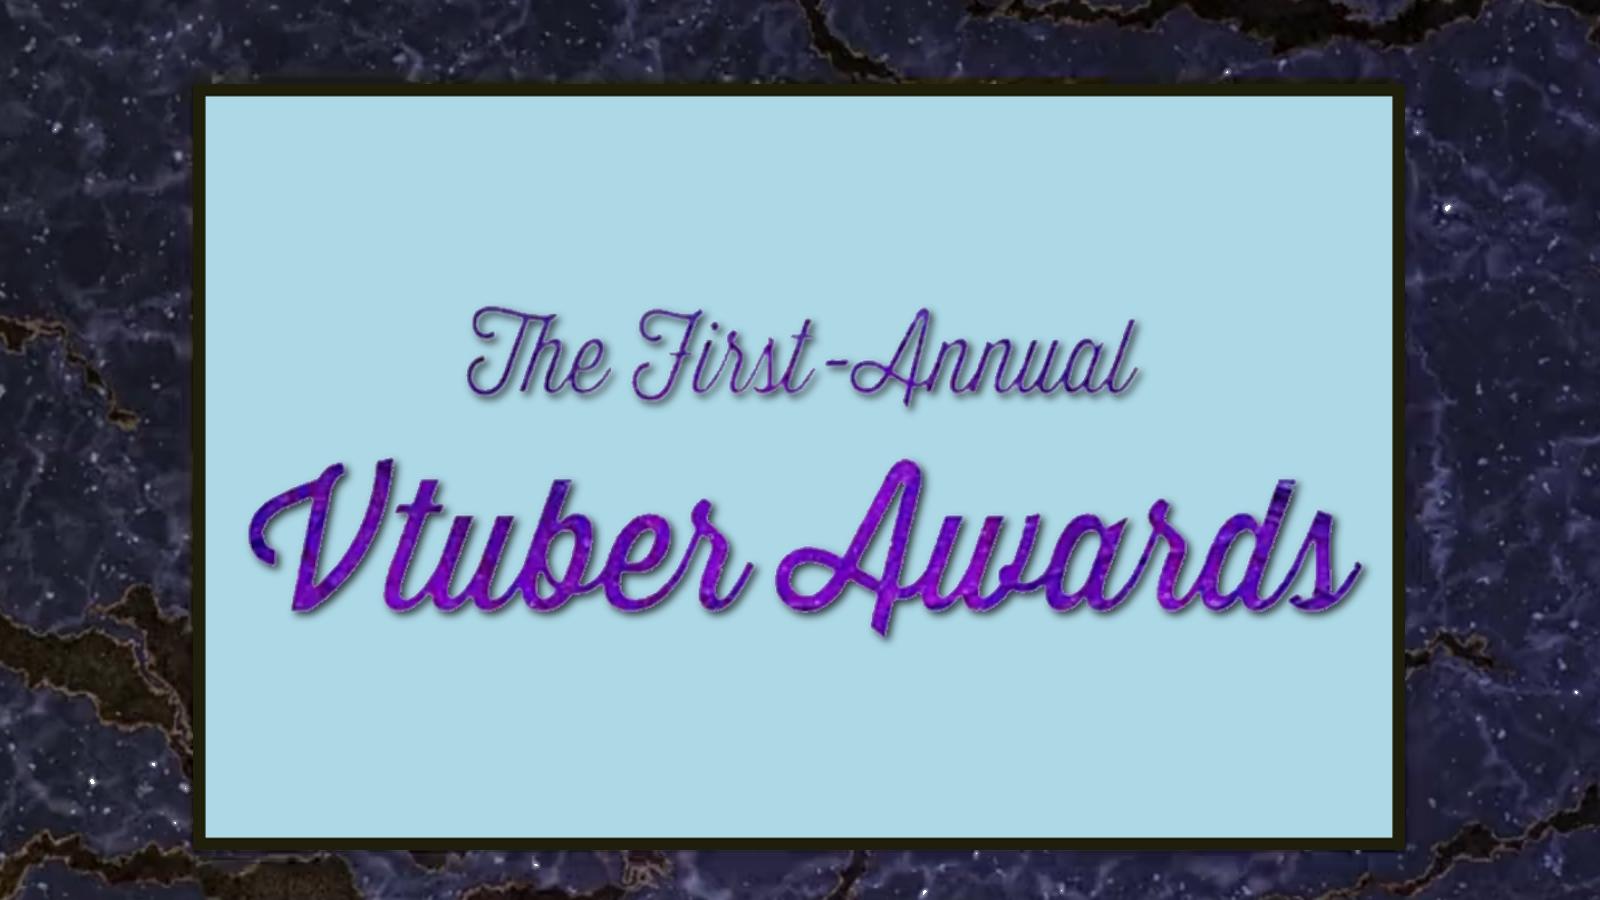 The VTuber Awards cermoney logo as revealed in Filian's announcement.